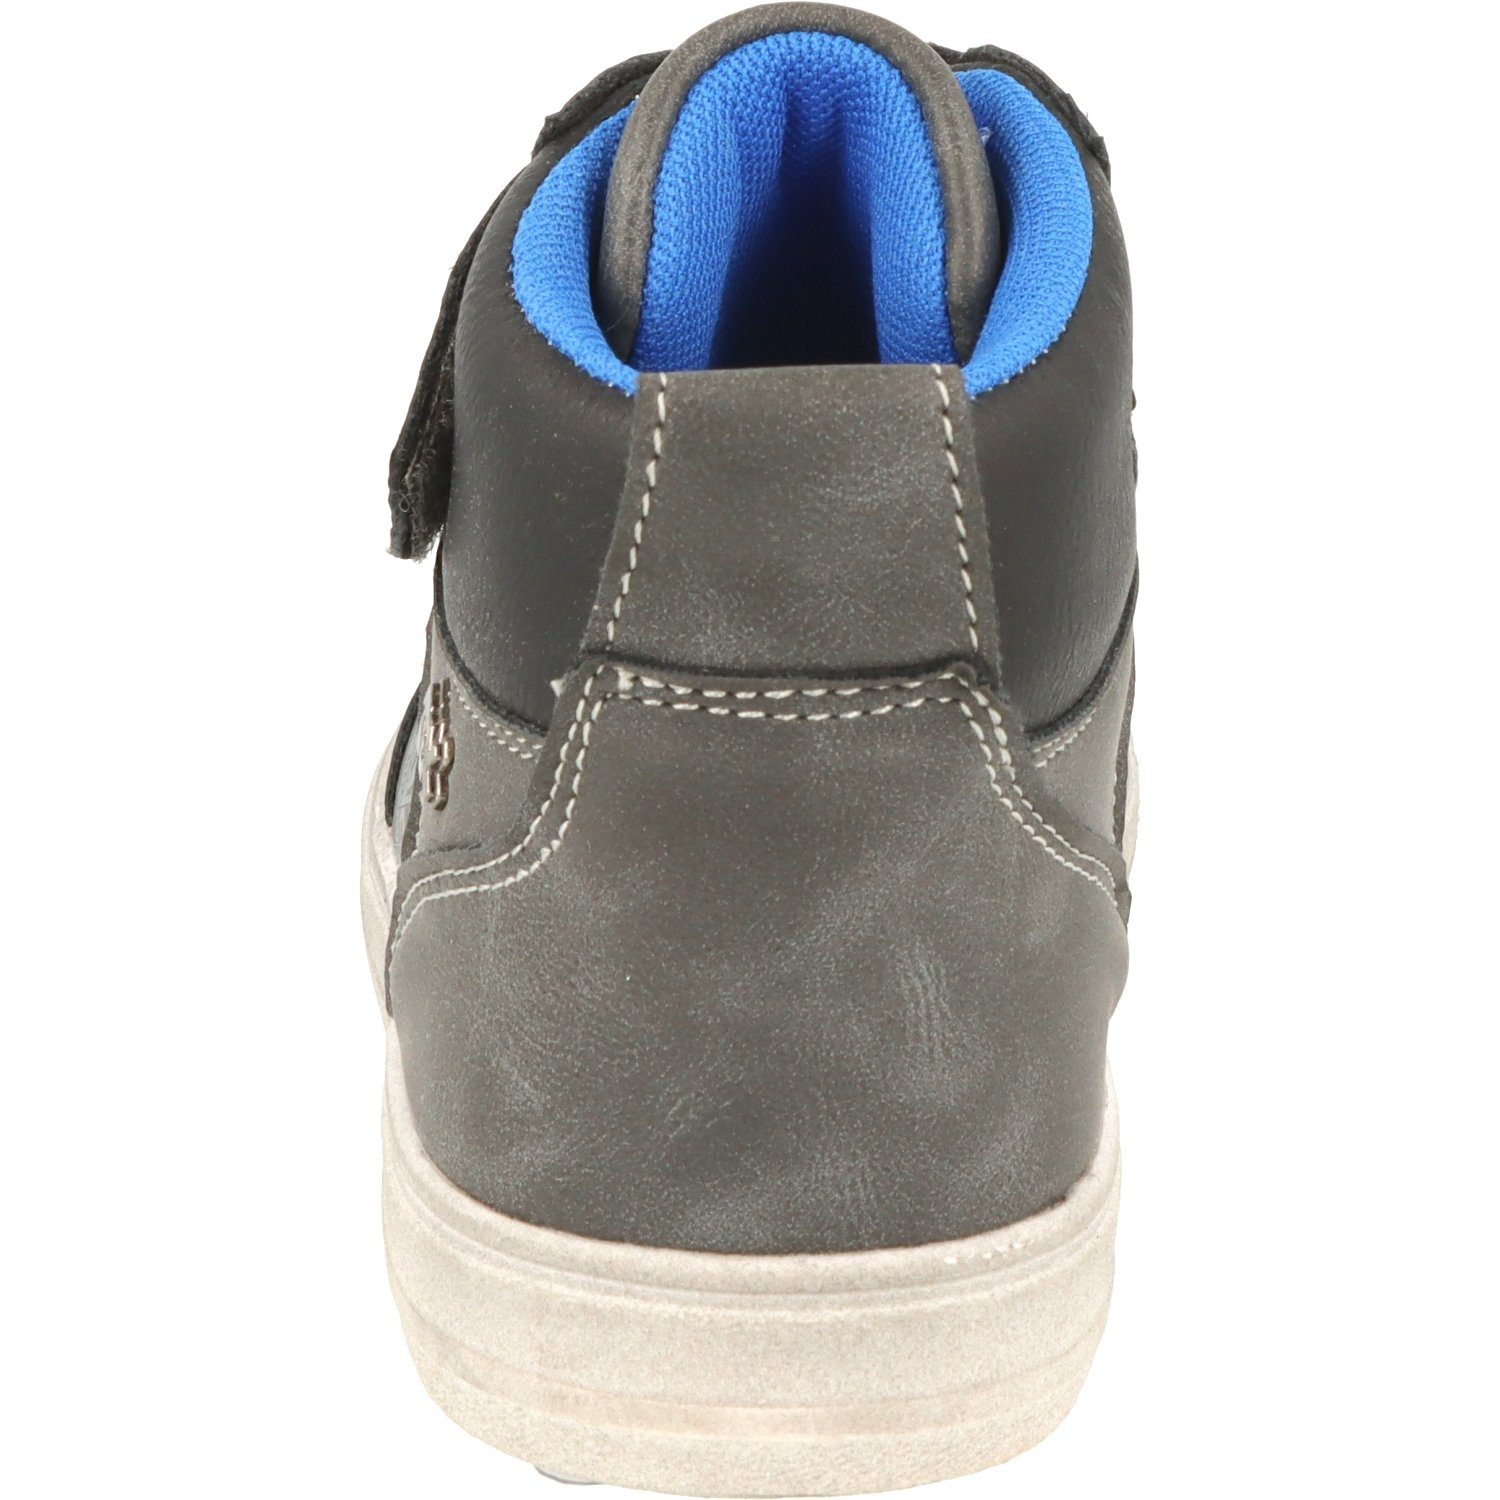 Indigo Jungen Schuhe 451-074 Schnürschuhe Dk.Grey Wasserabweisend Sneaker Hi-Top